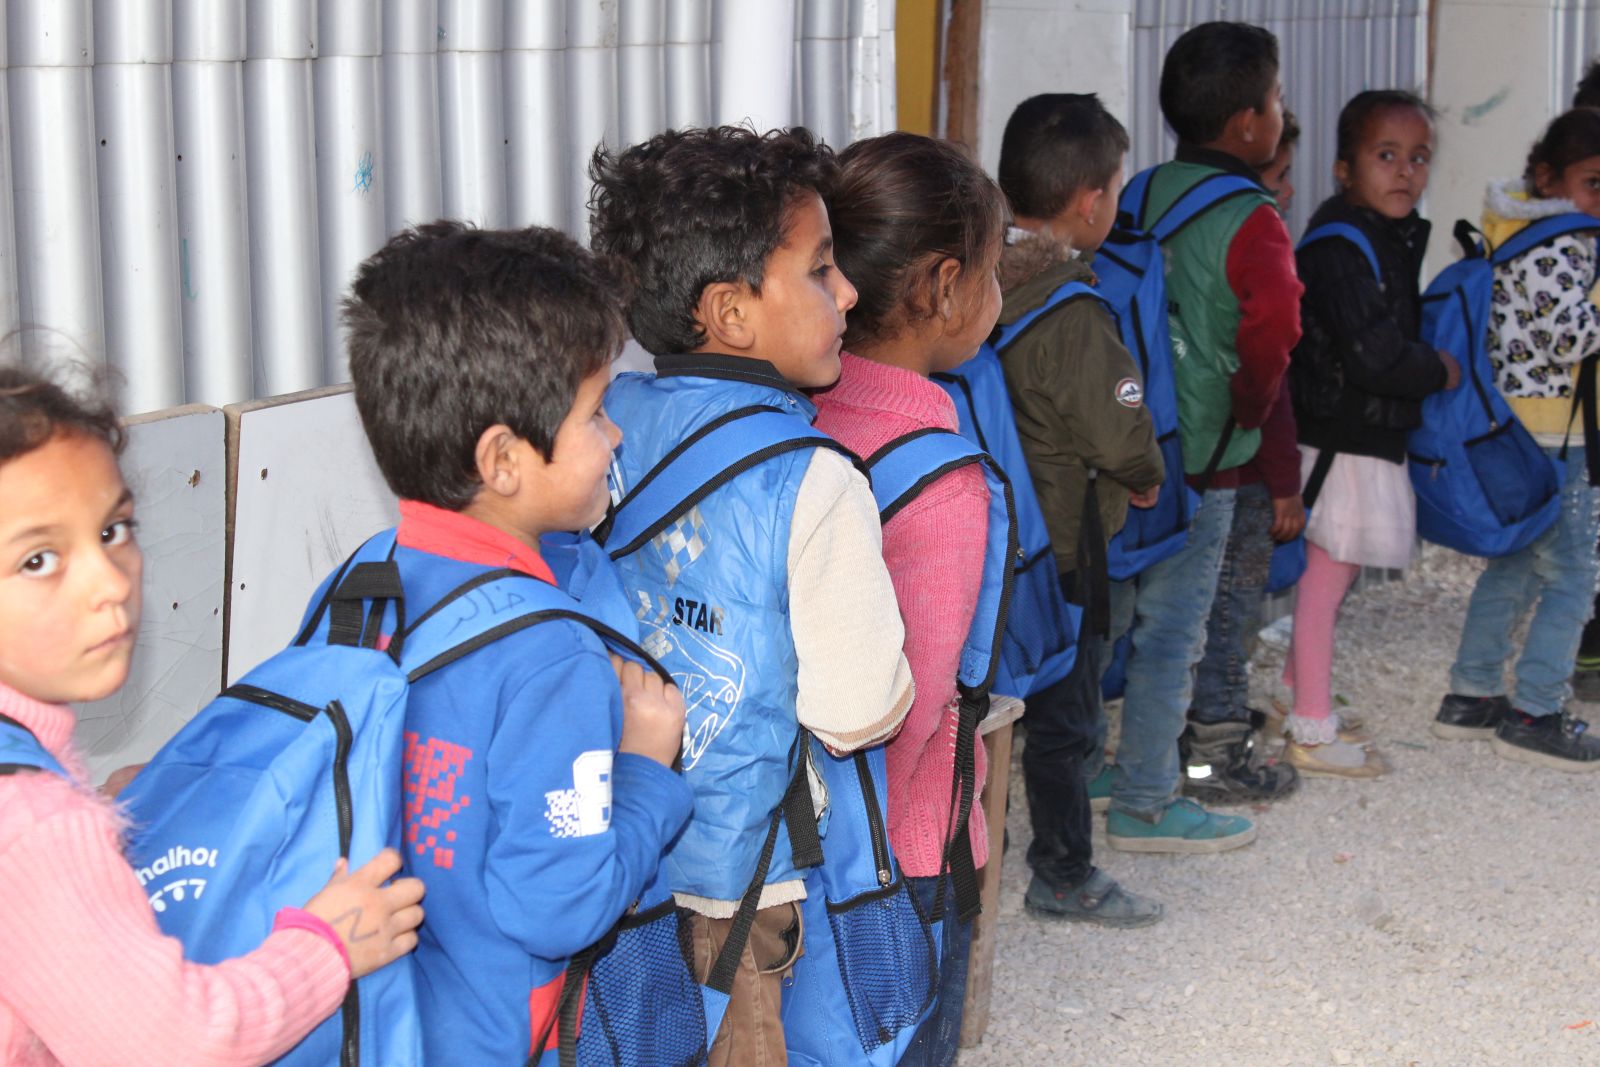 Grundschulkinder im libanesischen Flüchtlingslager Jusoor.